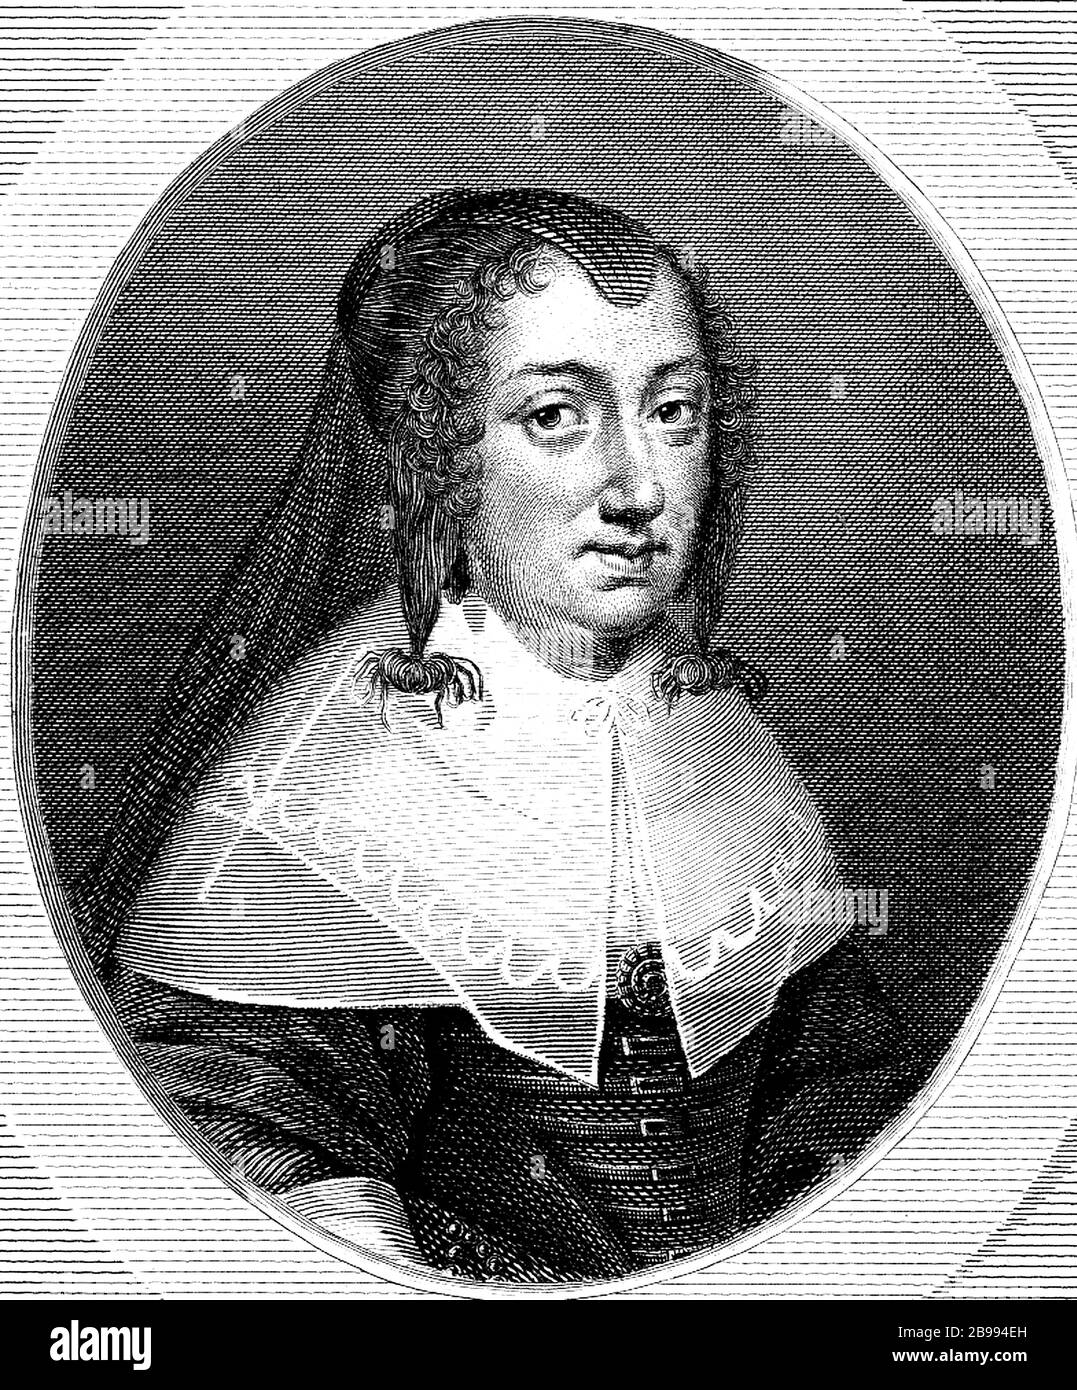 1645 CA , FRANCIA: Reina francesa ANA DE AUSTRIA nacida de habsburgo español ( 1601 - 1666 ), esposa del rey LUIS XIII ( 1601 - 1643 ), madre del rey Luis XIV Roi Soleil ( 1638 - 1715 ) y regente de Francia durante su minoría . Durante su regencia el Cardenal Mazarin sirvió como Ministro Principal de Francia . Retrato de grabador sin entificar, 1810 ca. - ANNE d'Autriche - Regina ANNA D'AUSTRIA - ASBURGO - ABSBURGO - Mazarino - NOBLEZA - NOBILI francesi - Nobiltà francese - FRANCIA - illustrazione - ilustración - grabado - incisione - Regina di Francia - collar - colletto - encaje - pizzo - rizos - riccio Foto de stock